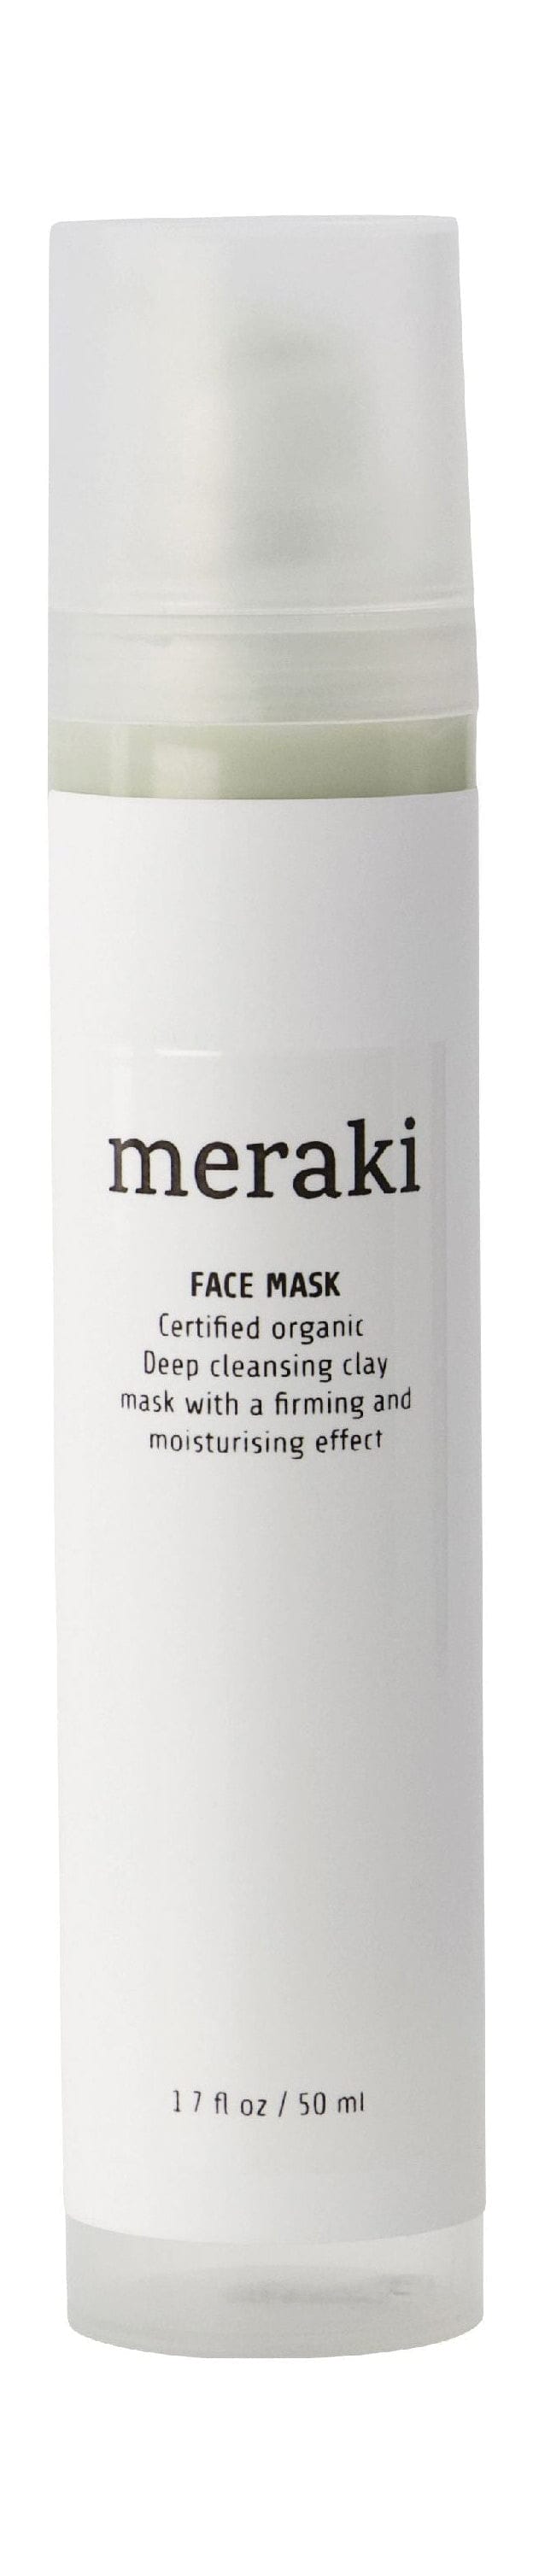 Meraki Face Mask Organic